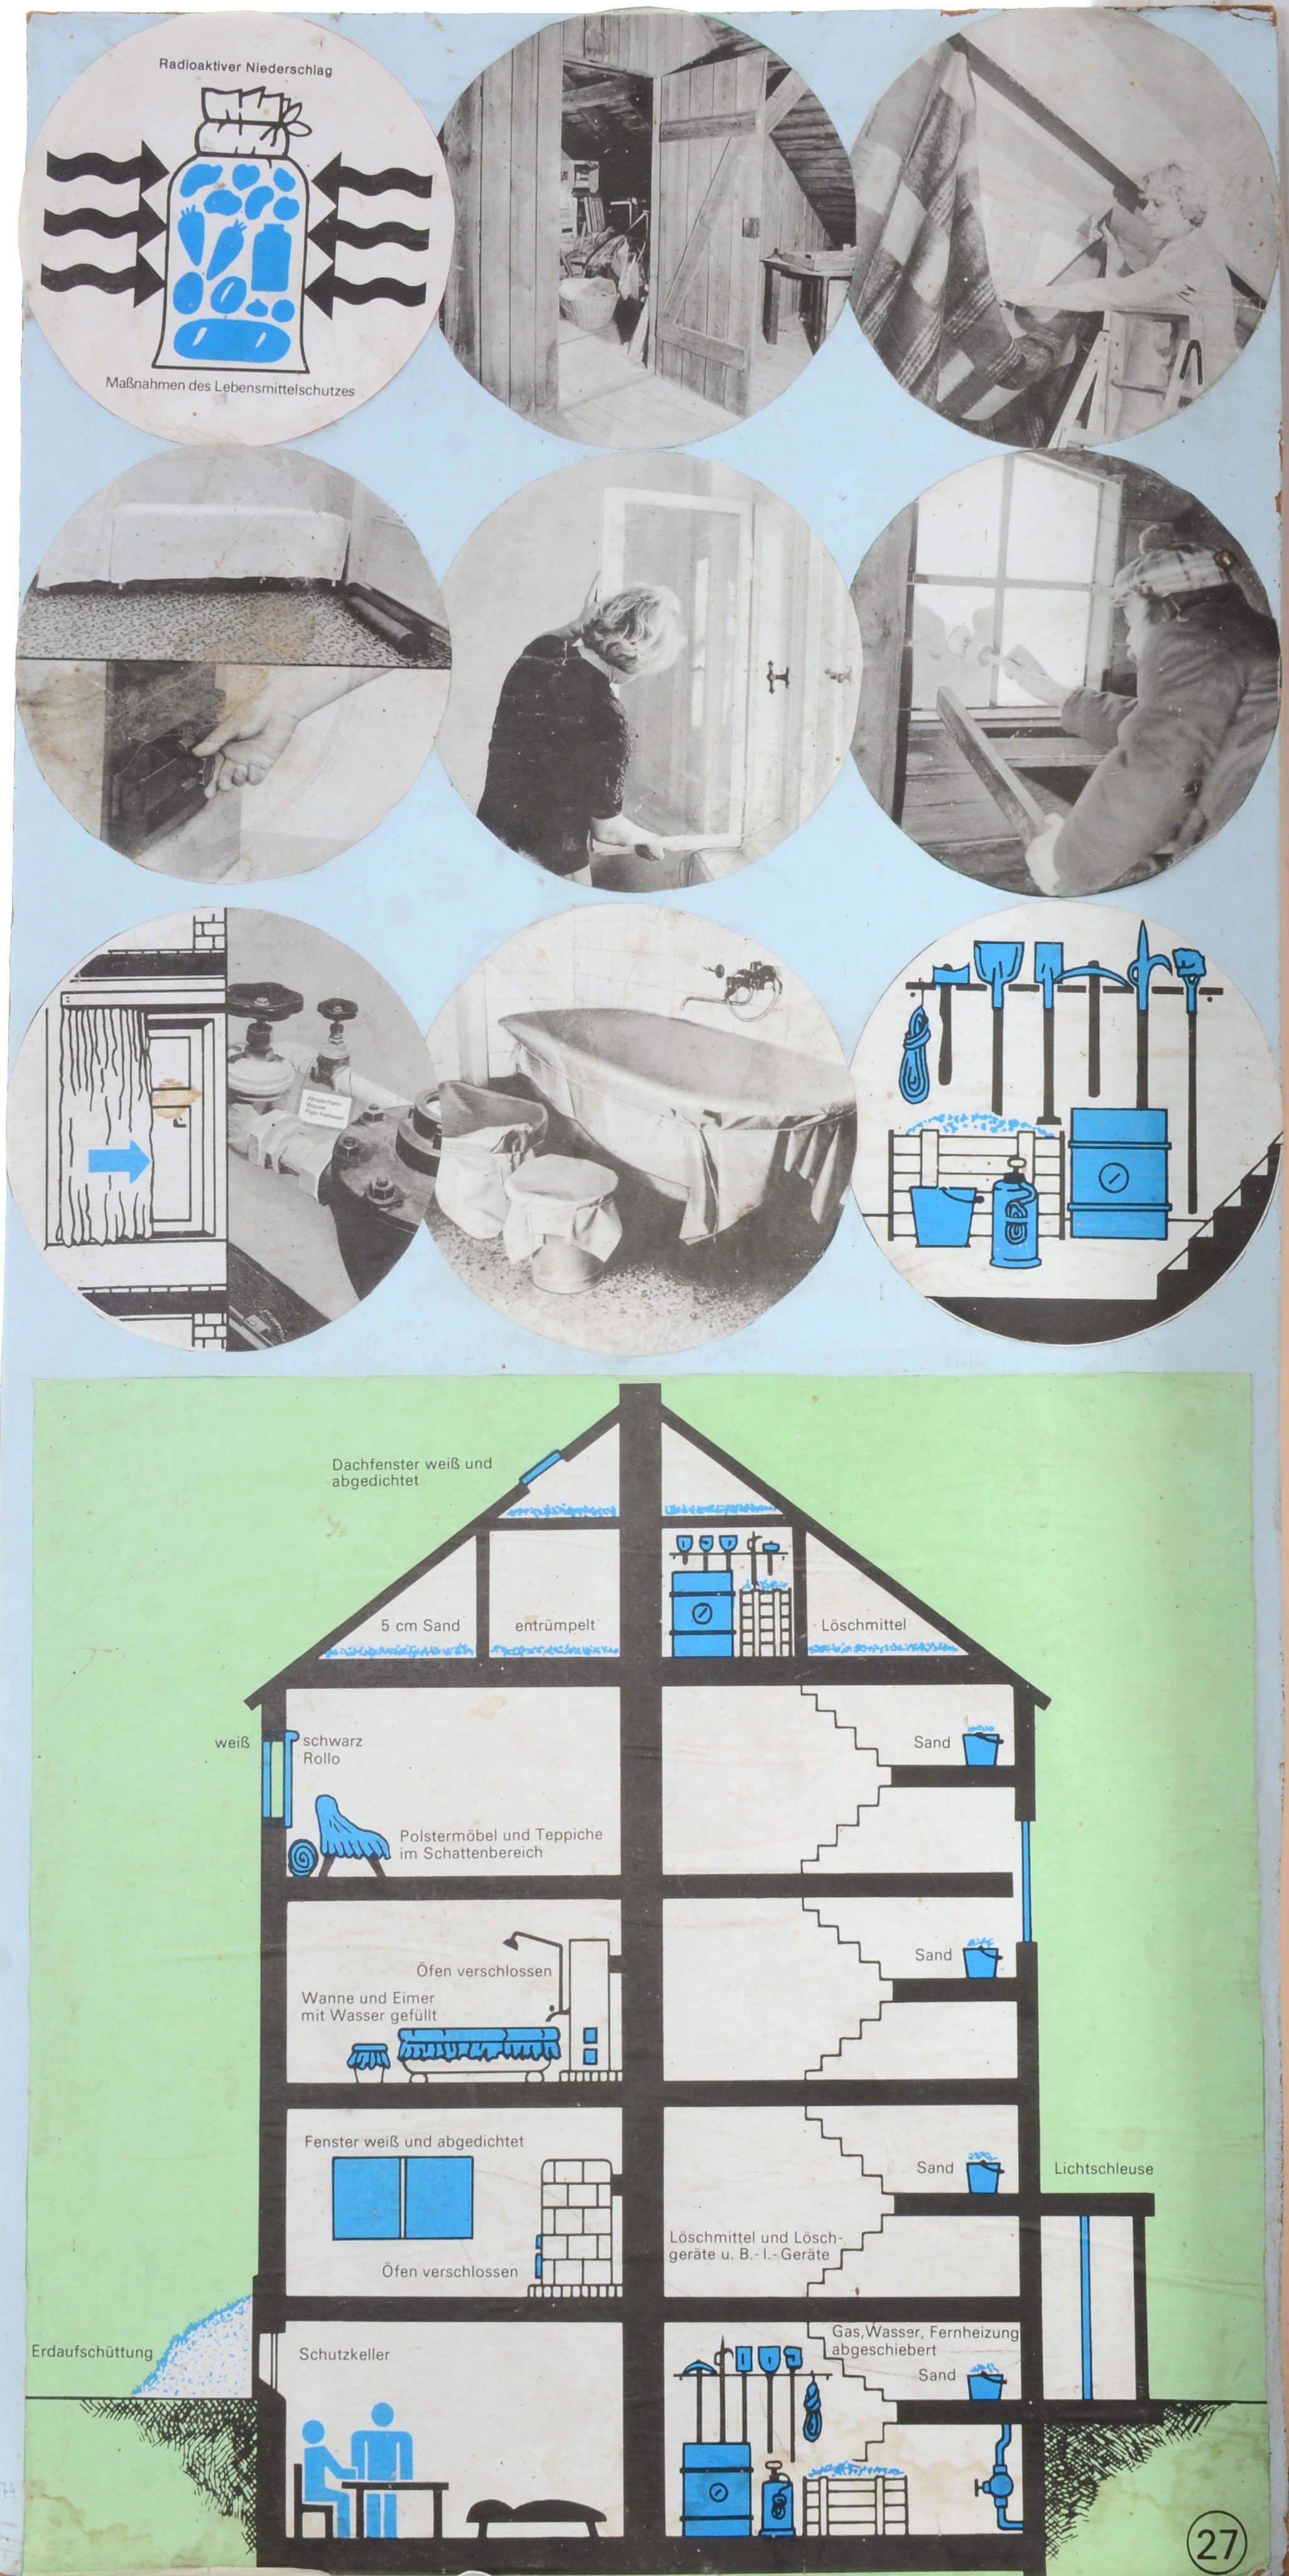 Plakat mit Instruktionen zur Sicherung des Hauses und Haushalts für den Fall eines atomaren Angriffs (DDR Geschichtsmuseum im Dokumentationszentrum Perleberg CC BY-SA)